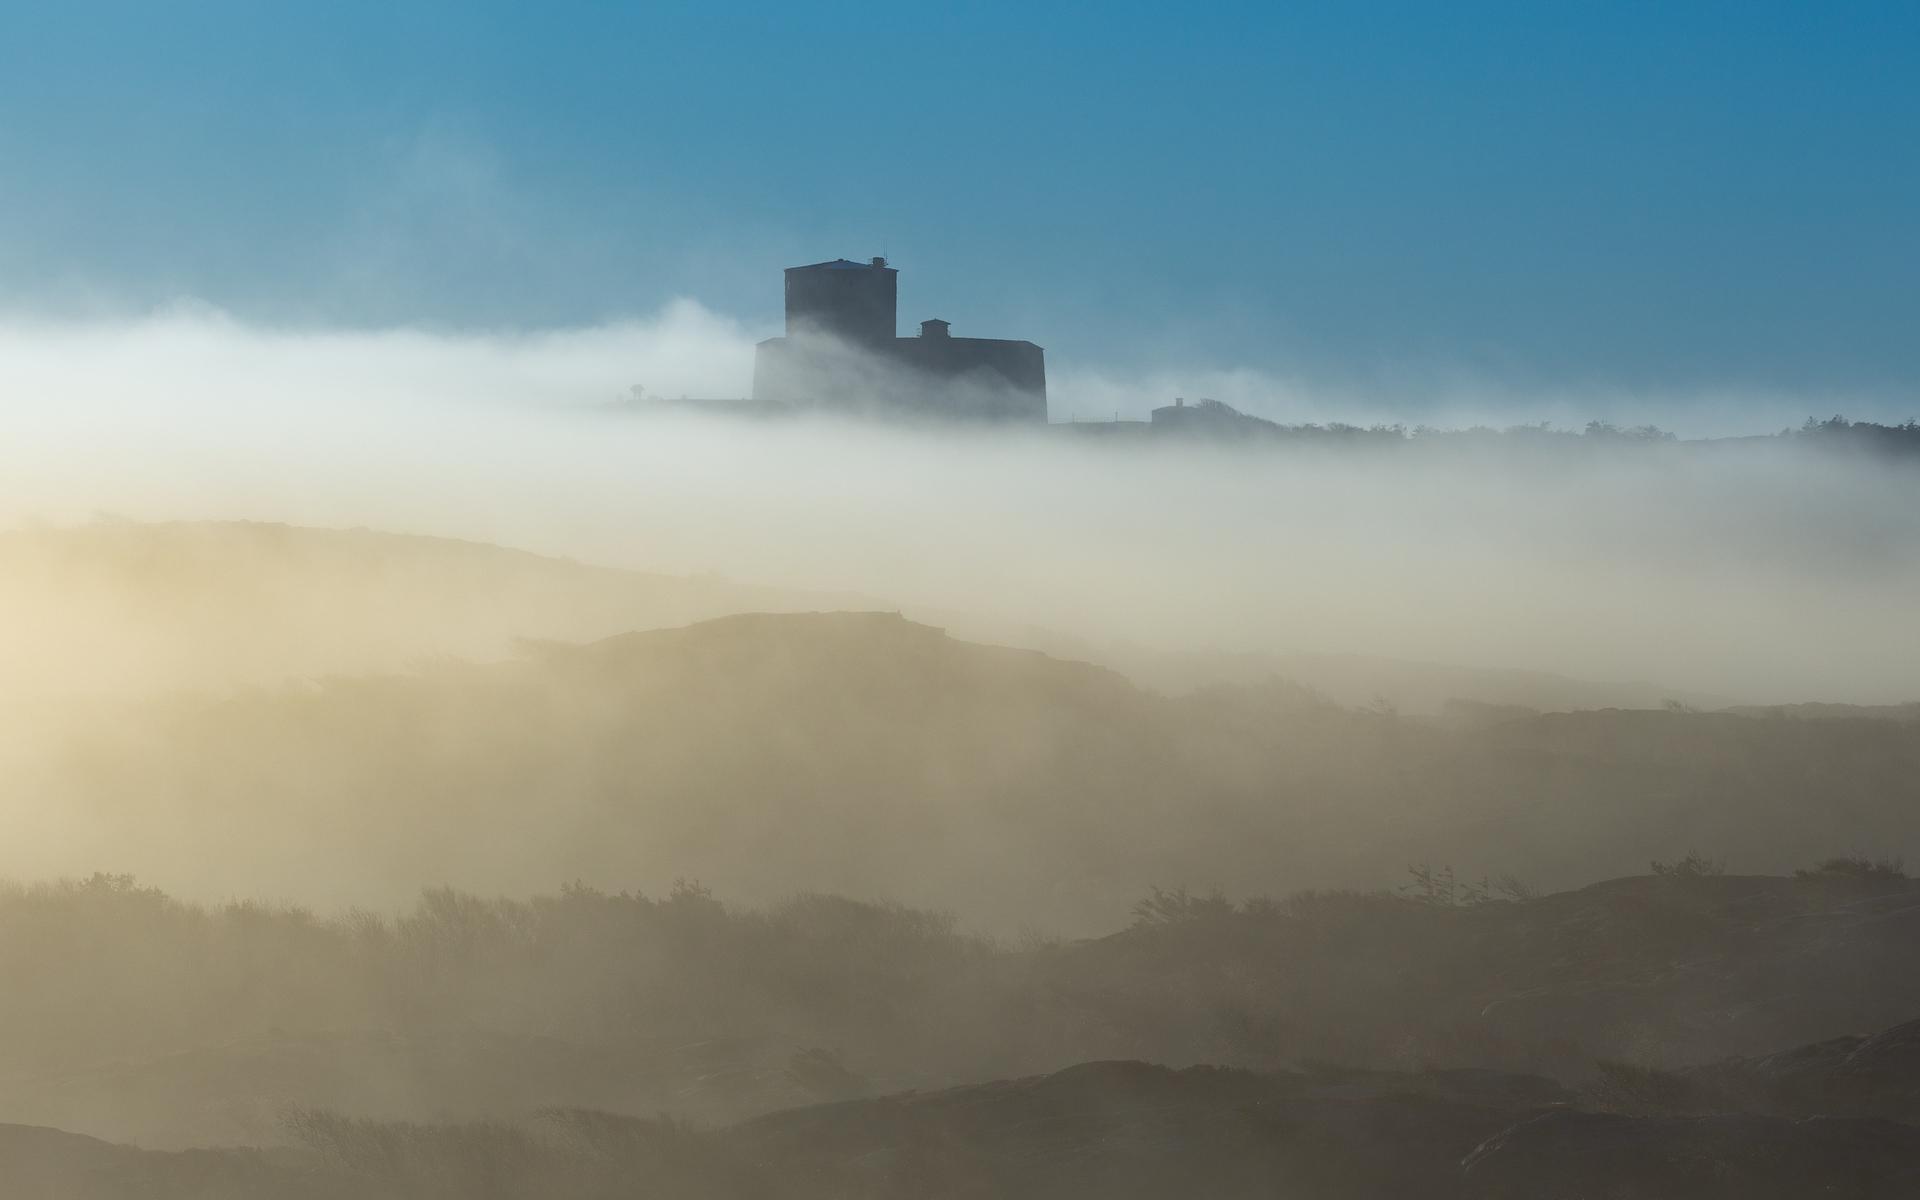 Carlstens fästning, 18 december 2021, en dimmig morgon. Tagen från en av utsikterna på svarta slingan, Koön.”Underbar minimalistisk bild av fästningen i fantastiskt morgonljus, och med alla lager av Koöns natur”, skriver Thomas Kihlberg.